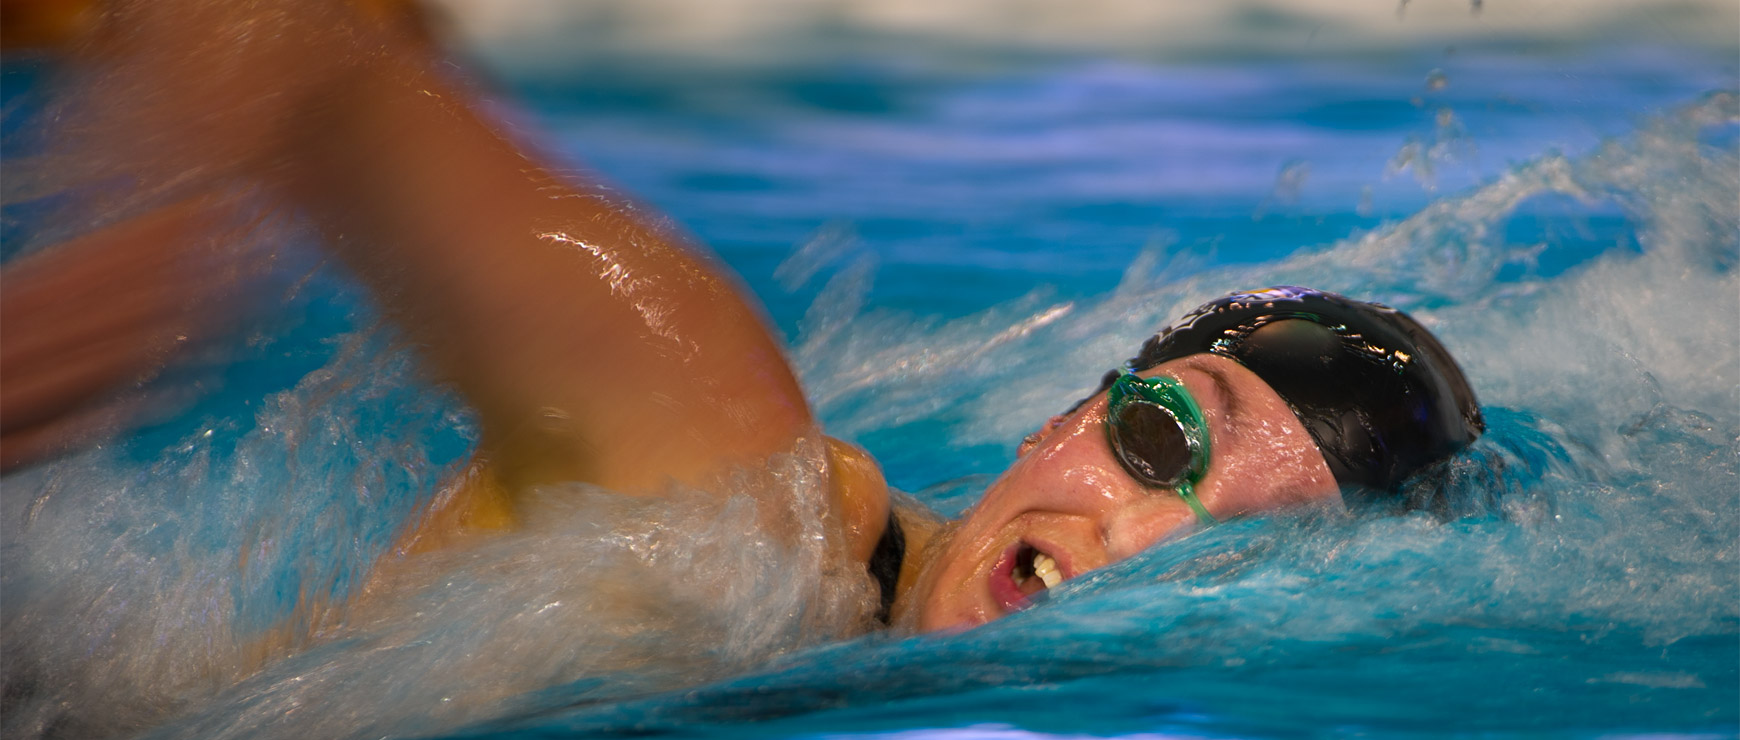 Swimmer in mid-stroke